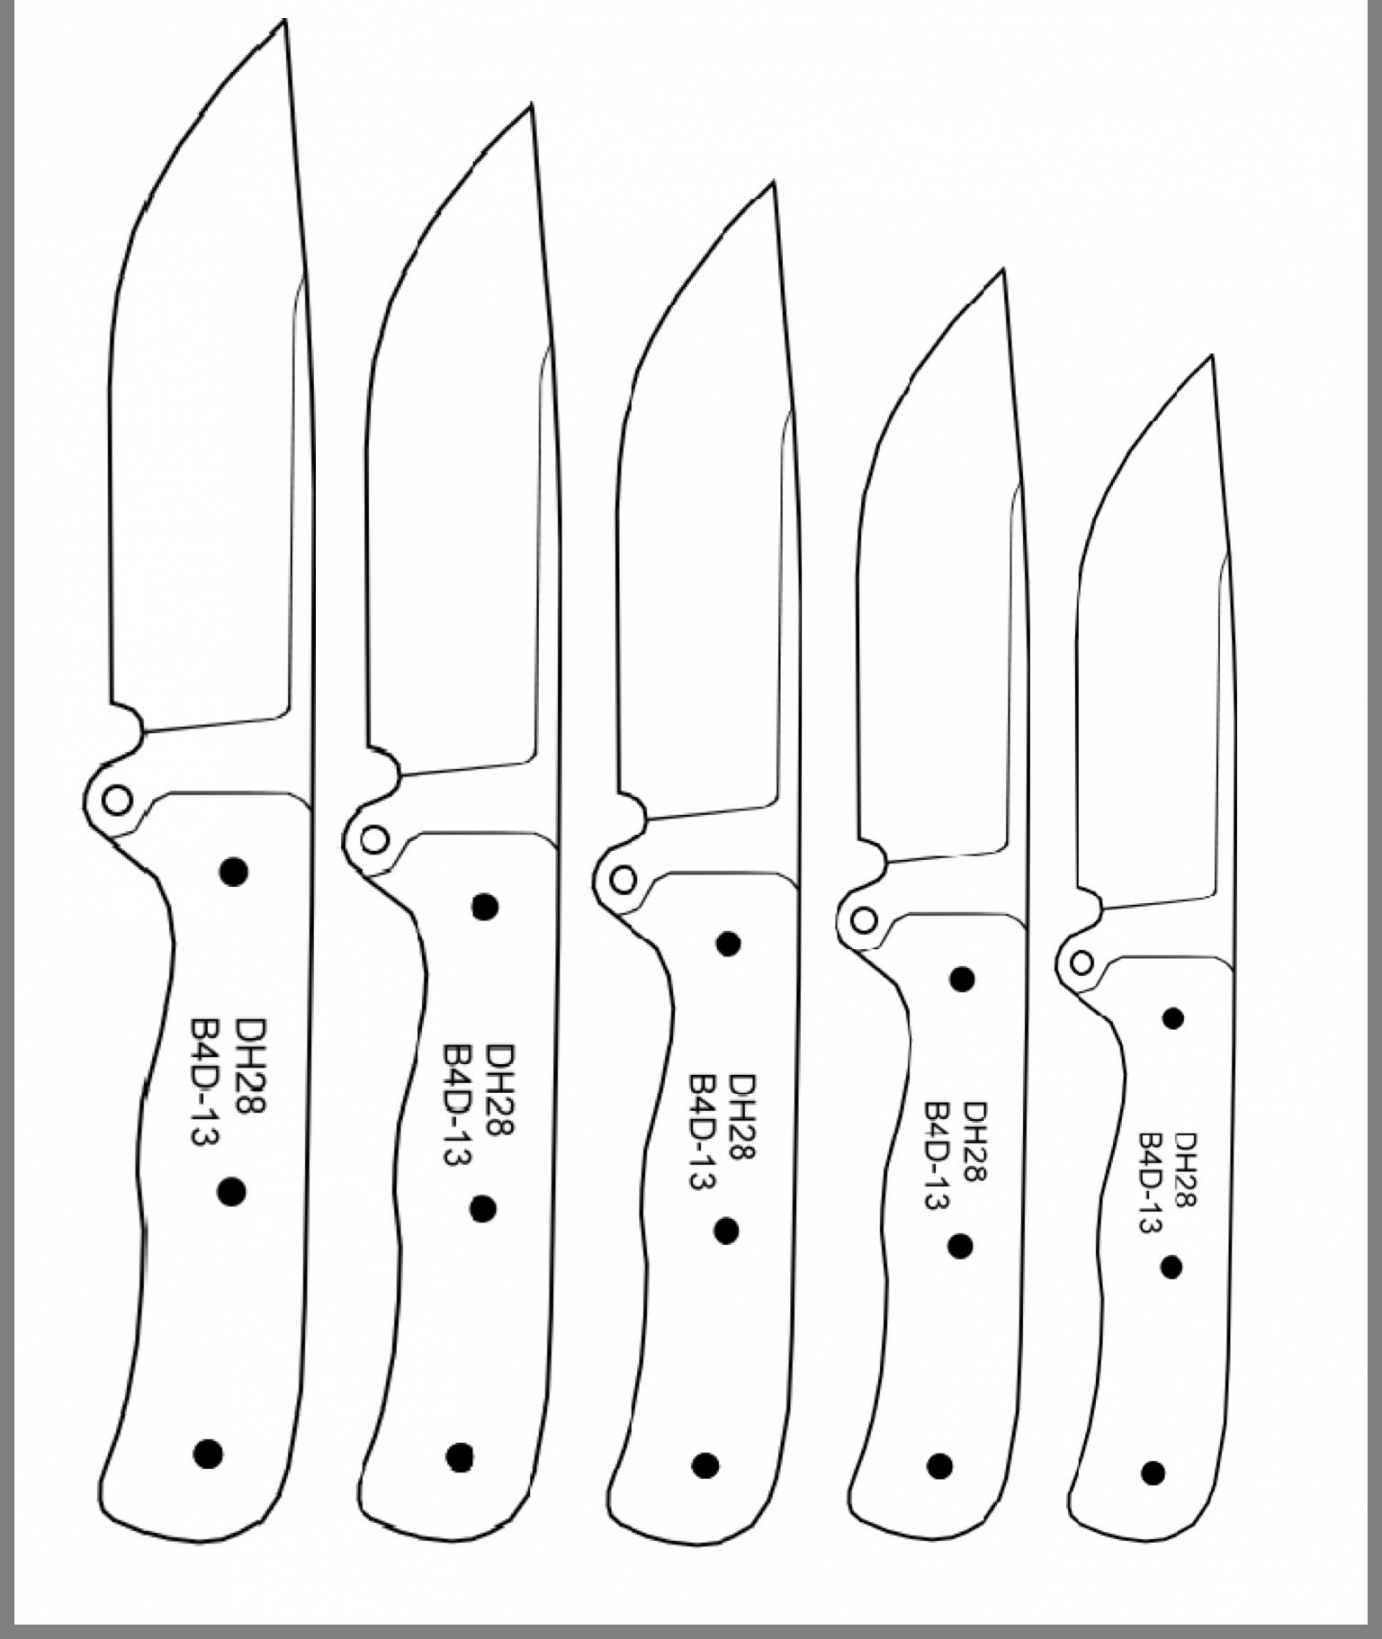 Printable Knife Patterns - Printable Word Searches - FREE Printables - Free Printable Knife Templates